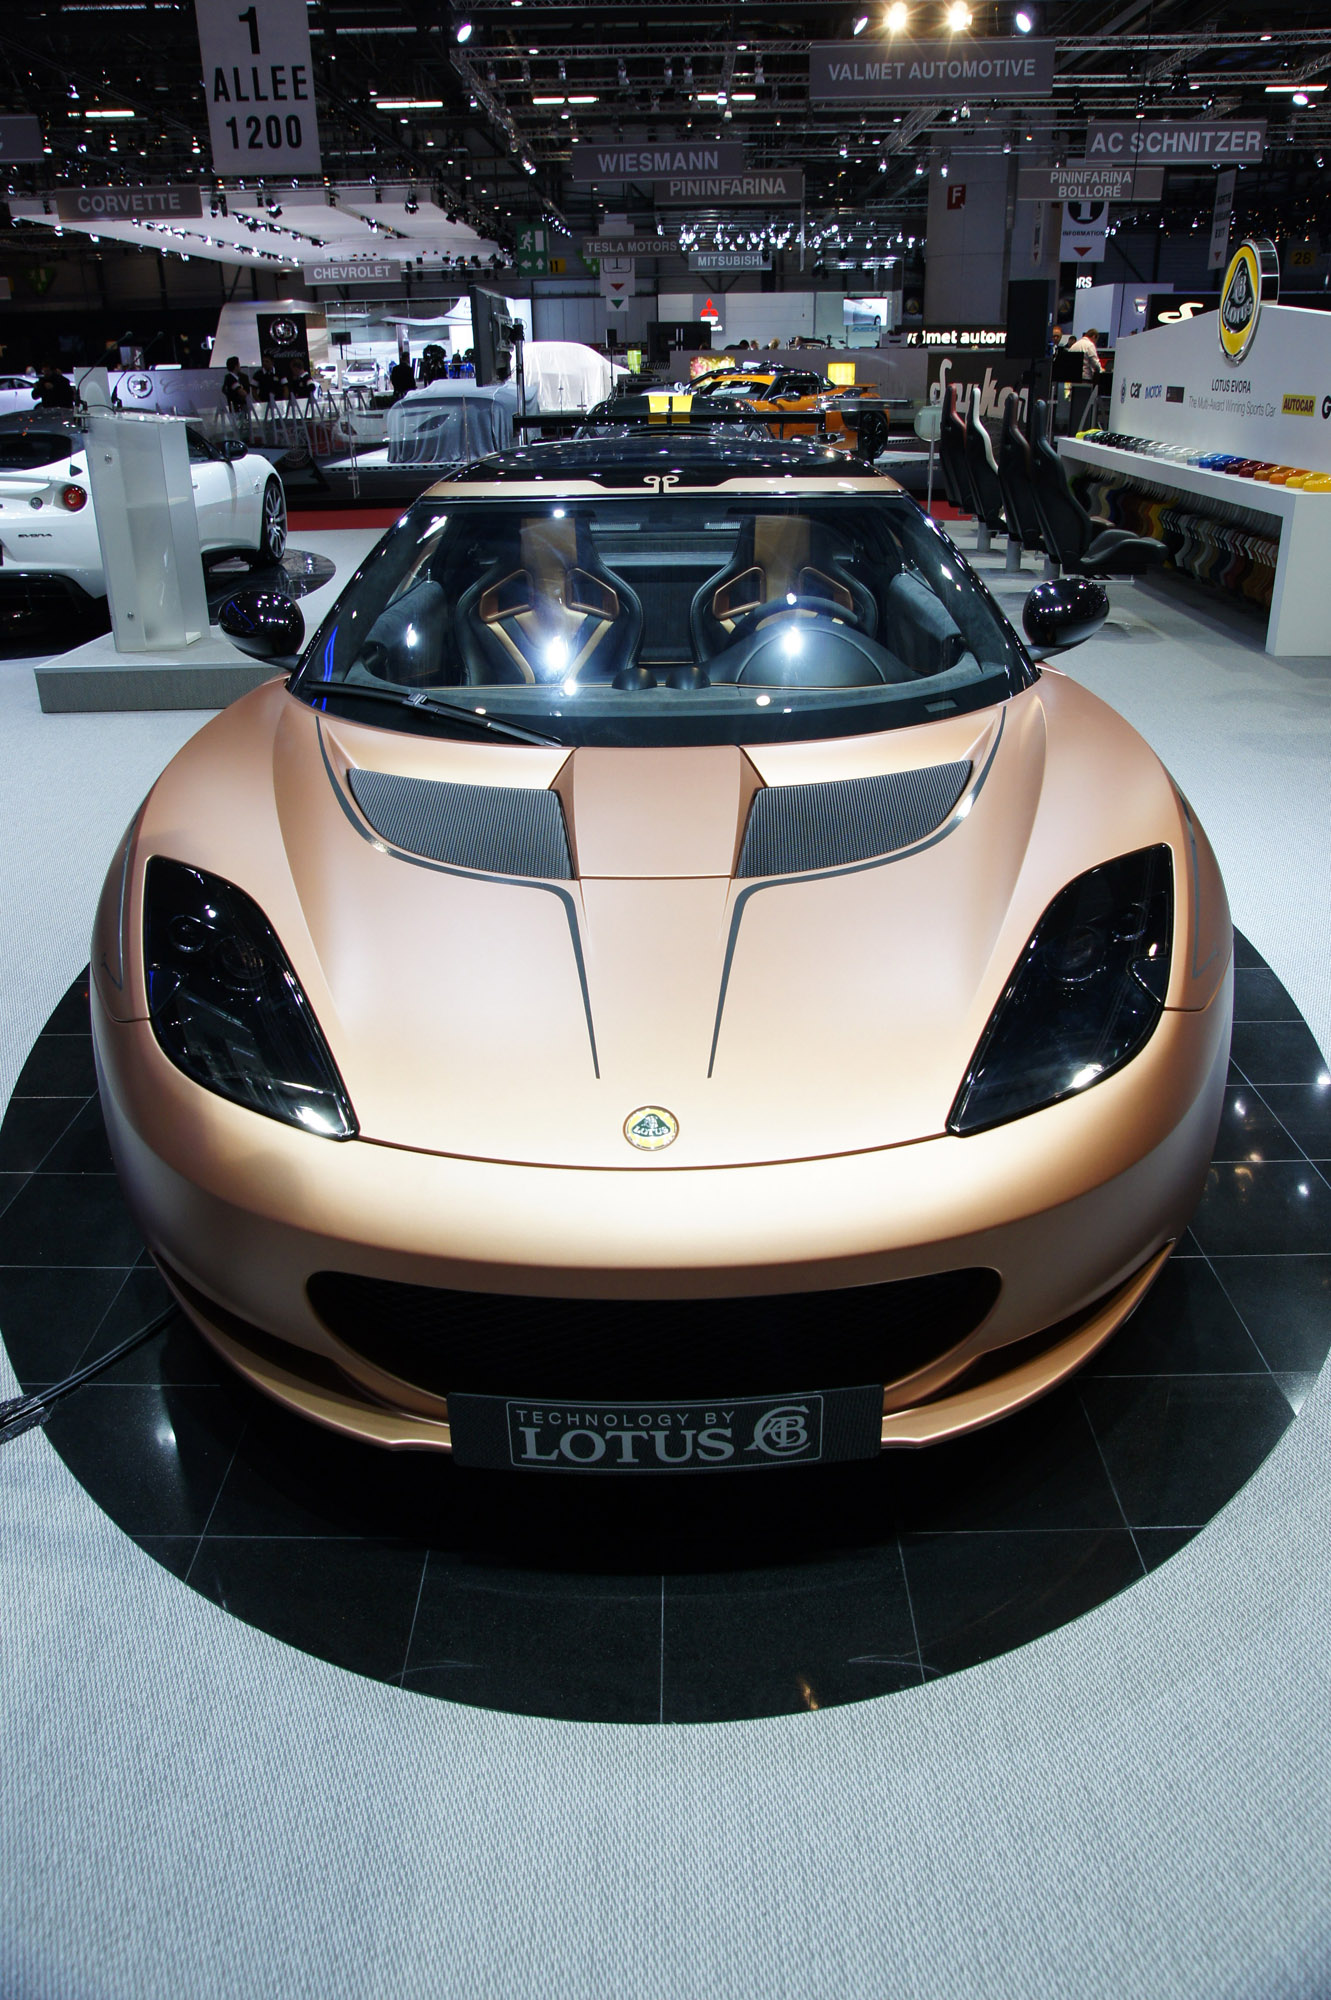 Lotus Evora 414E Hybrid Geneva